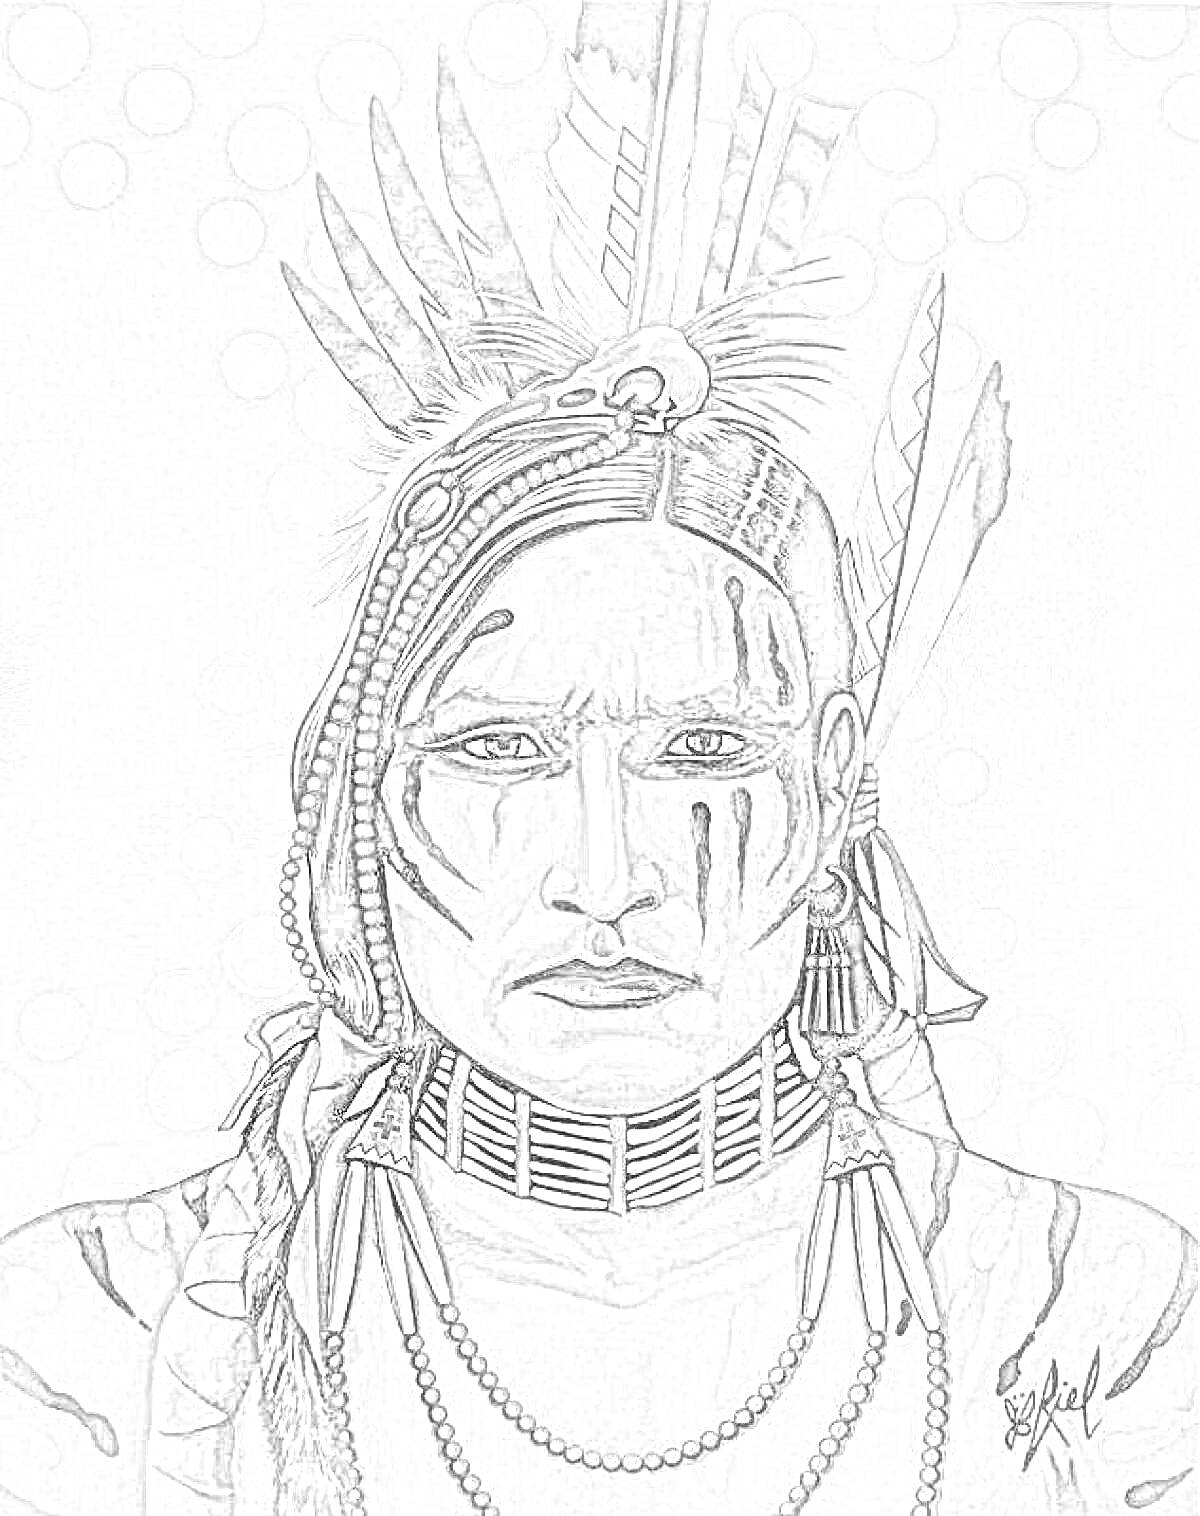 Раскраска Портрет индейца с боевой раскраской на лице и головным убором с перьями, на шее украшения из костей и бус